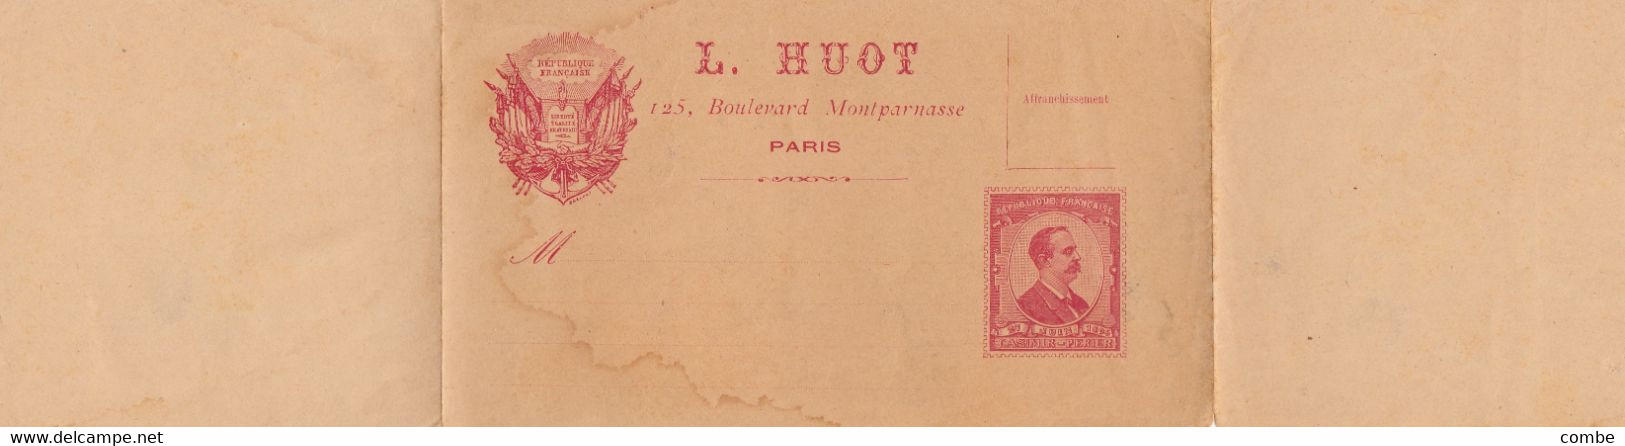 ENTIER POSTAL L. HUOT. PARIS CASIMIR-PERRIER - Private Stationery